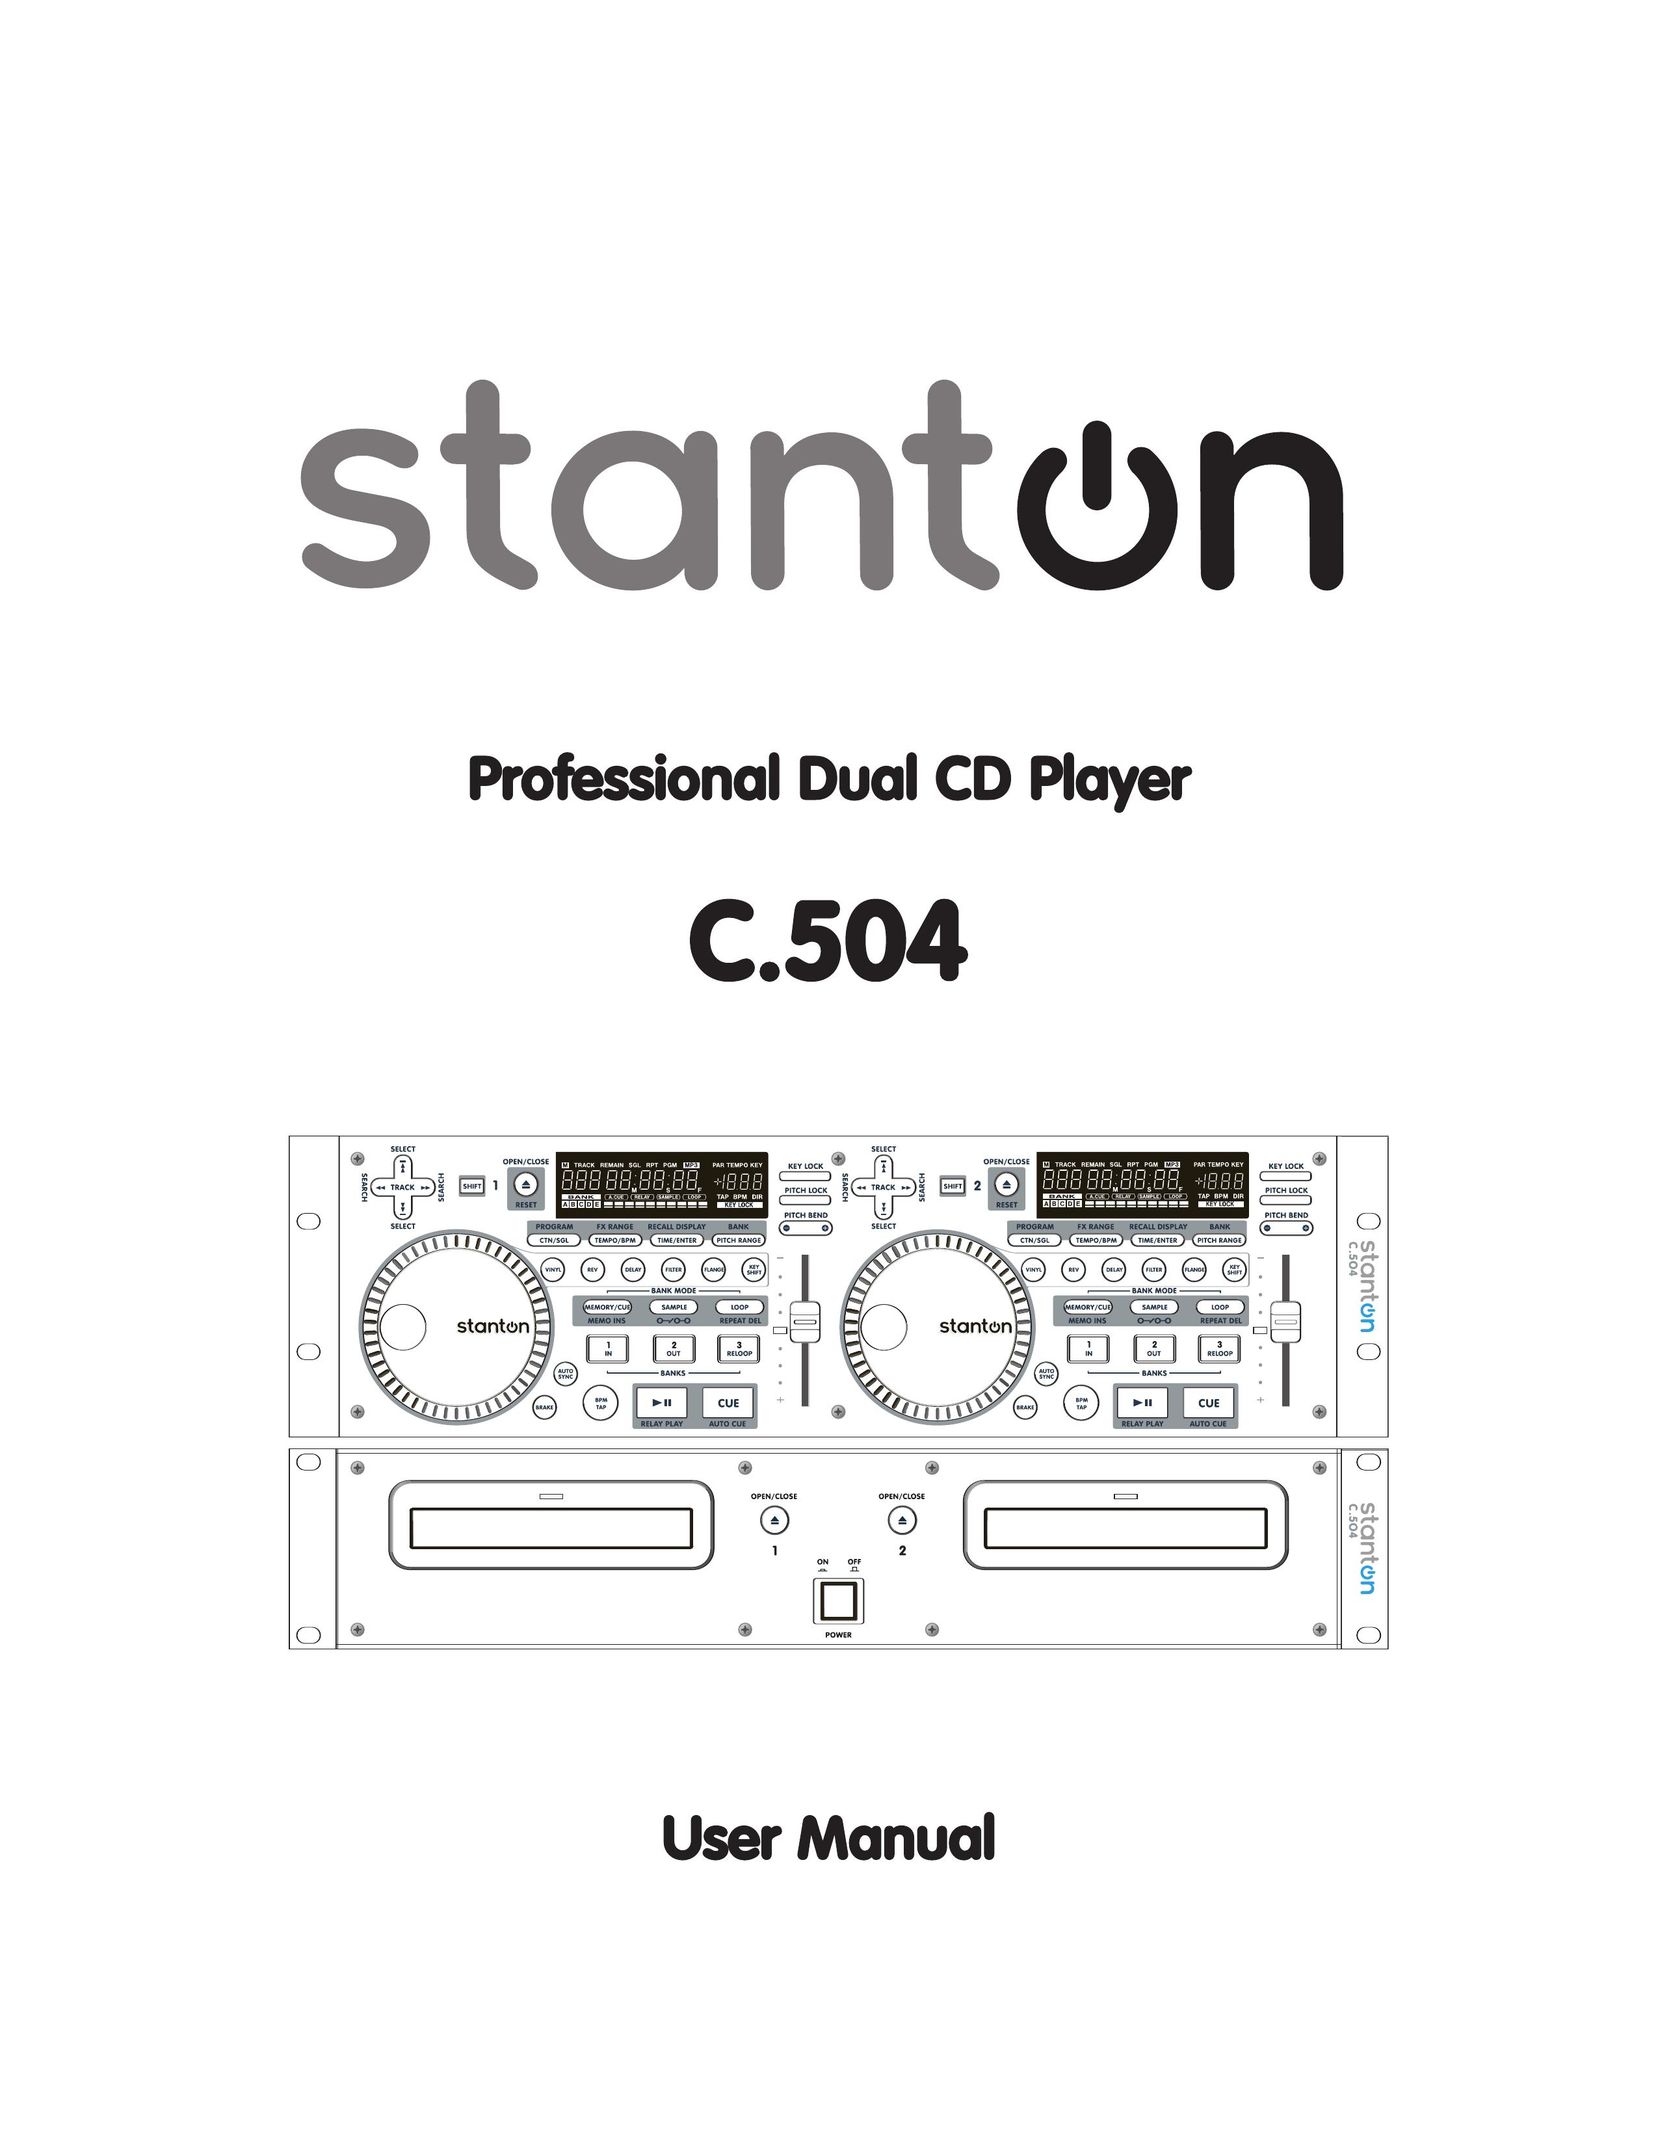 Stanton C.504 CD Player User Manual